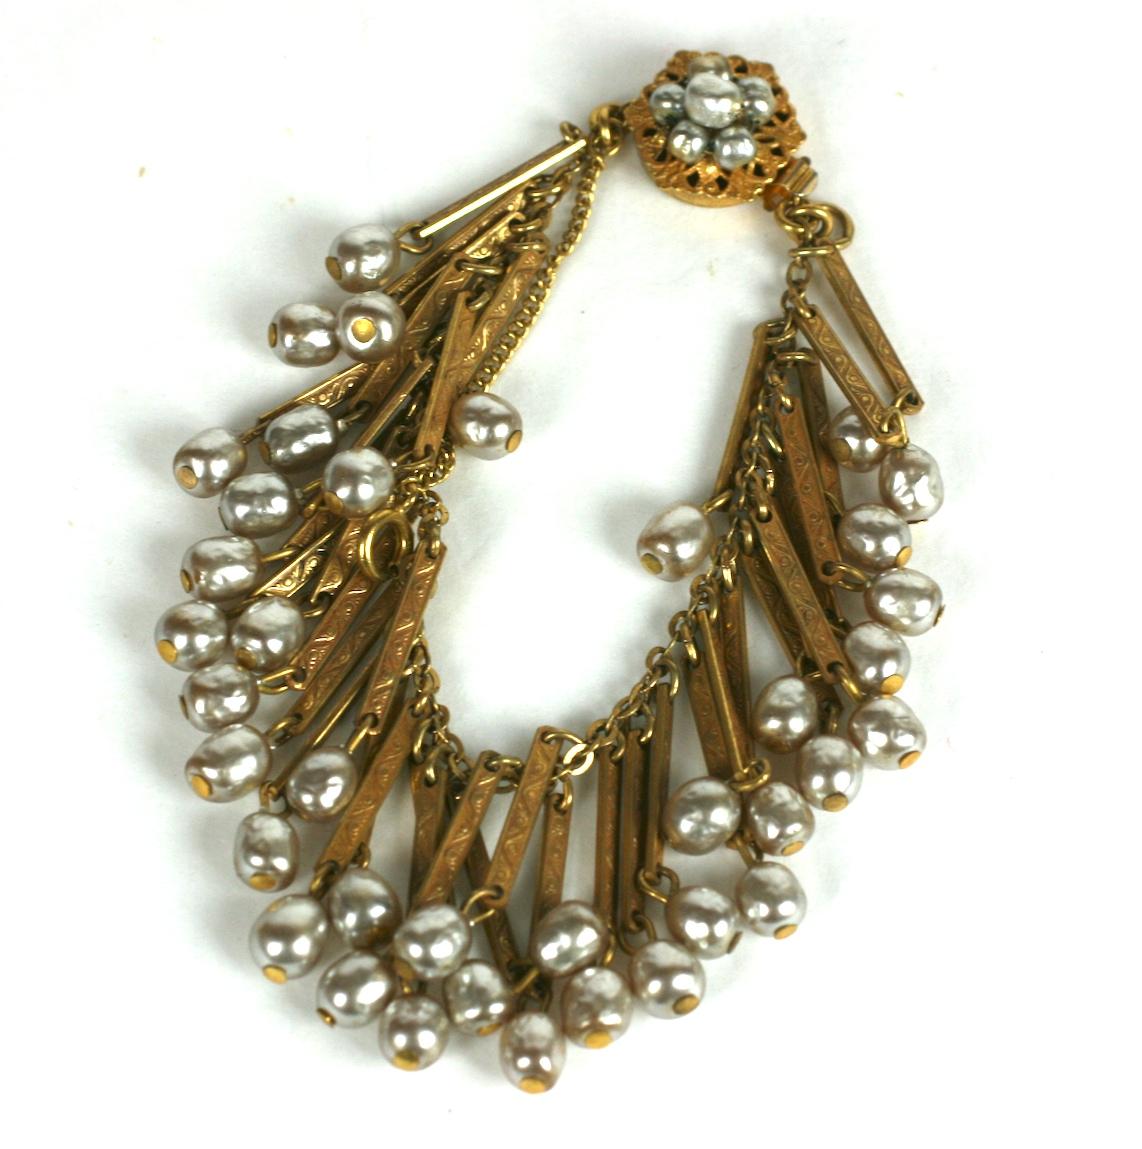 Miriam Haskell Victorian Revival faux Perle Fransen Armband der Unterschrift Barock Perlen und russischen vergoldet  eingeschnittene Balken, die einen fransigen Perlenrand bilden. Sechseckige Schließe mit  barocke Perlenverzierung.
Ausgezeichneter